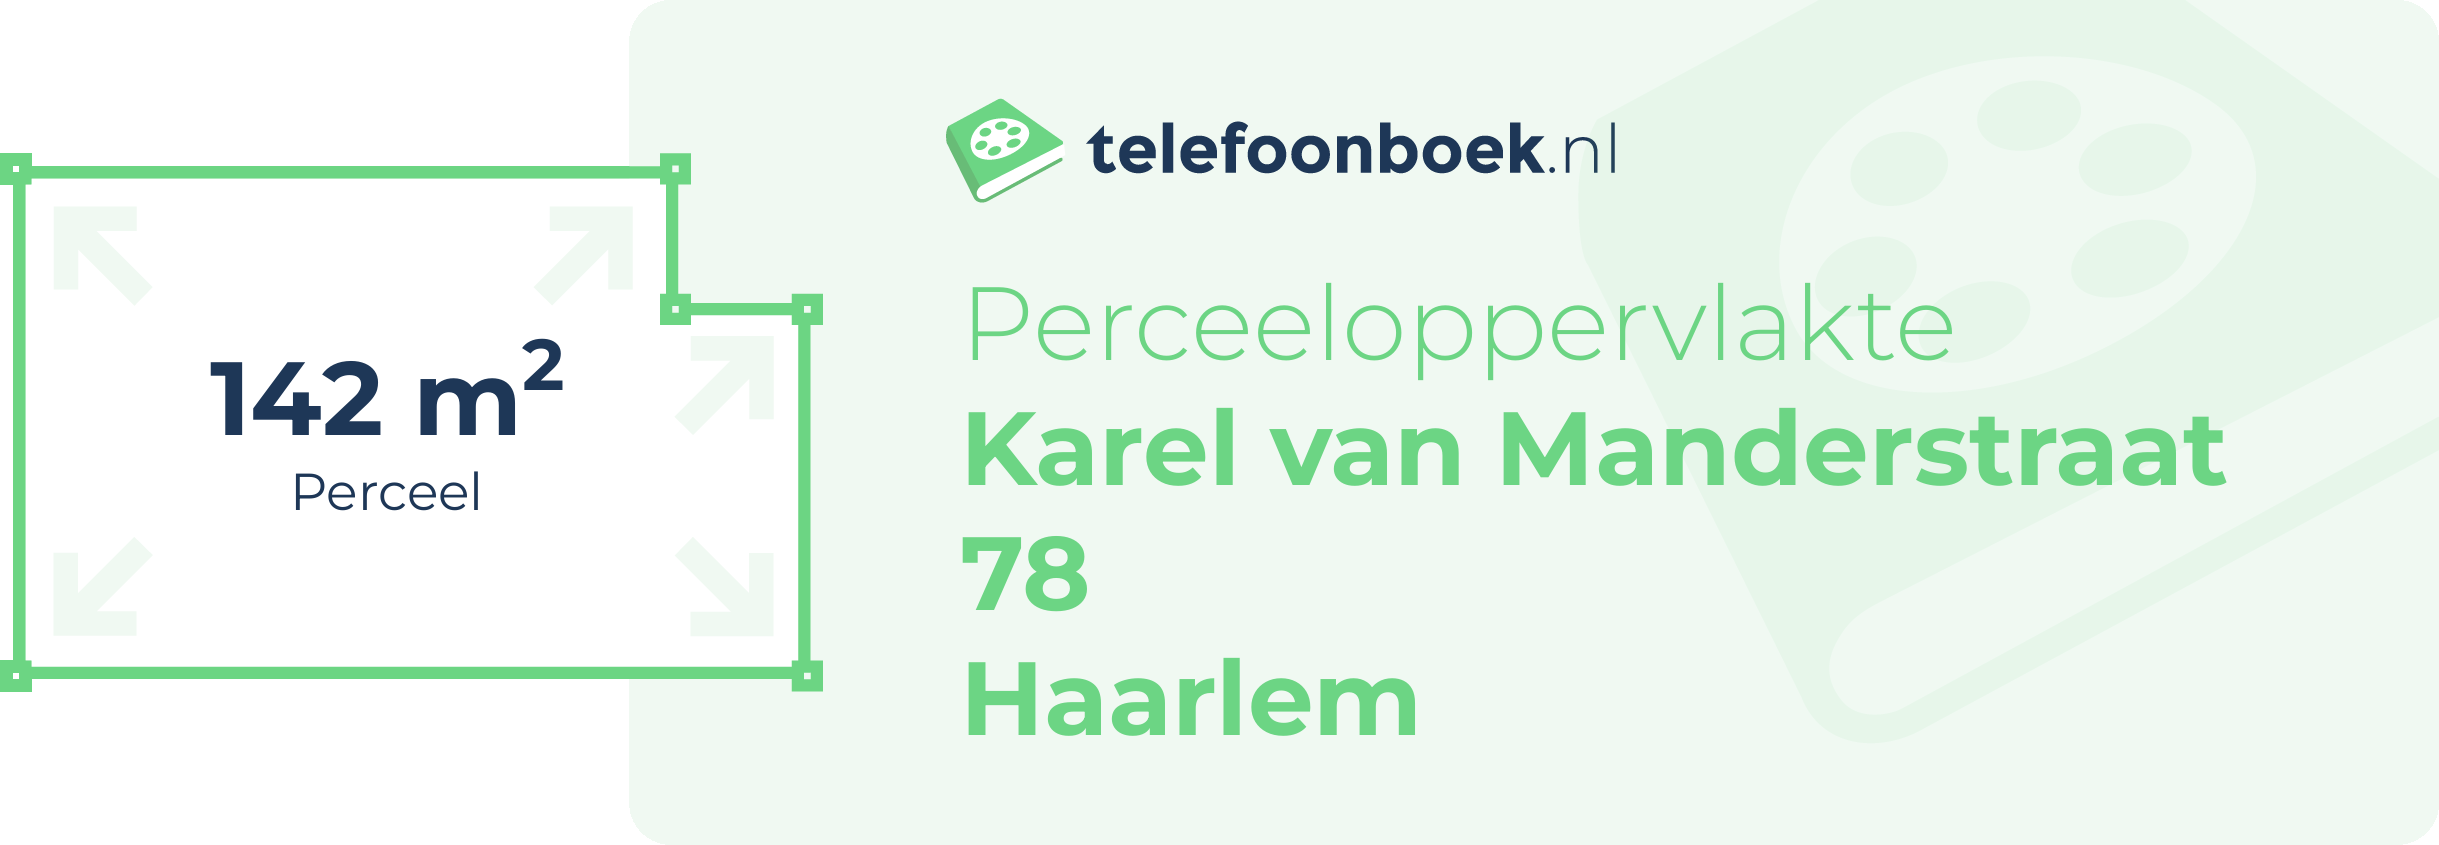 Perceeloppervlakte Karel Van Manderstraat 78 Haarlem